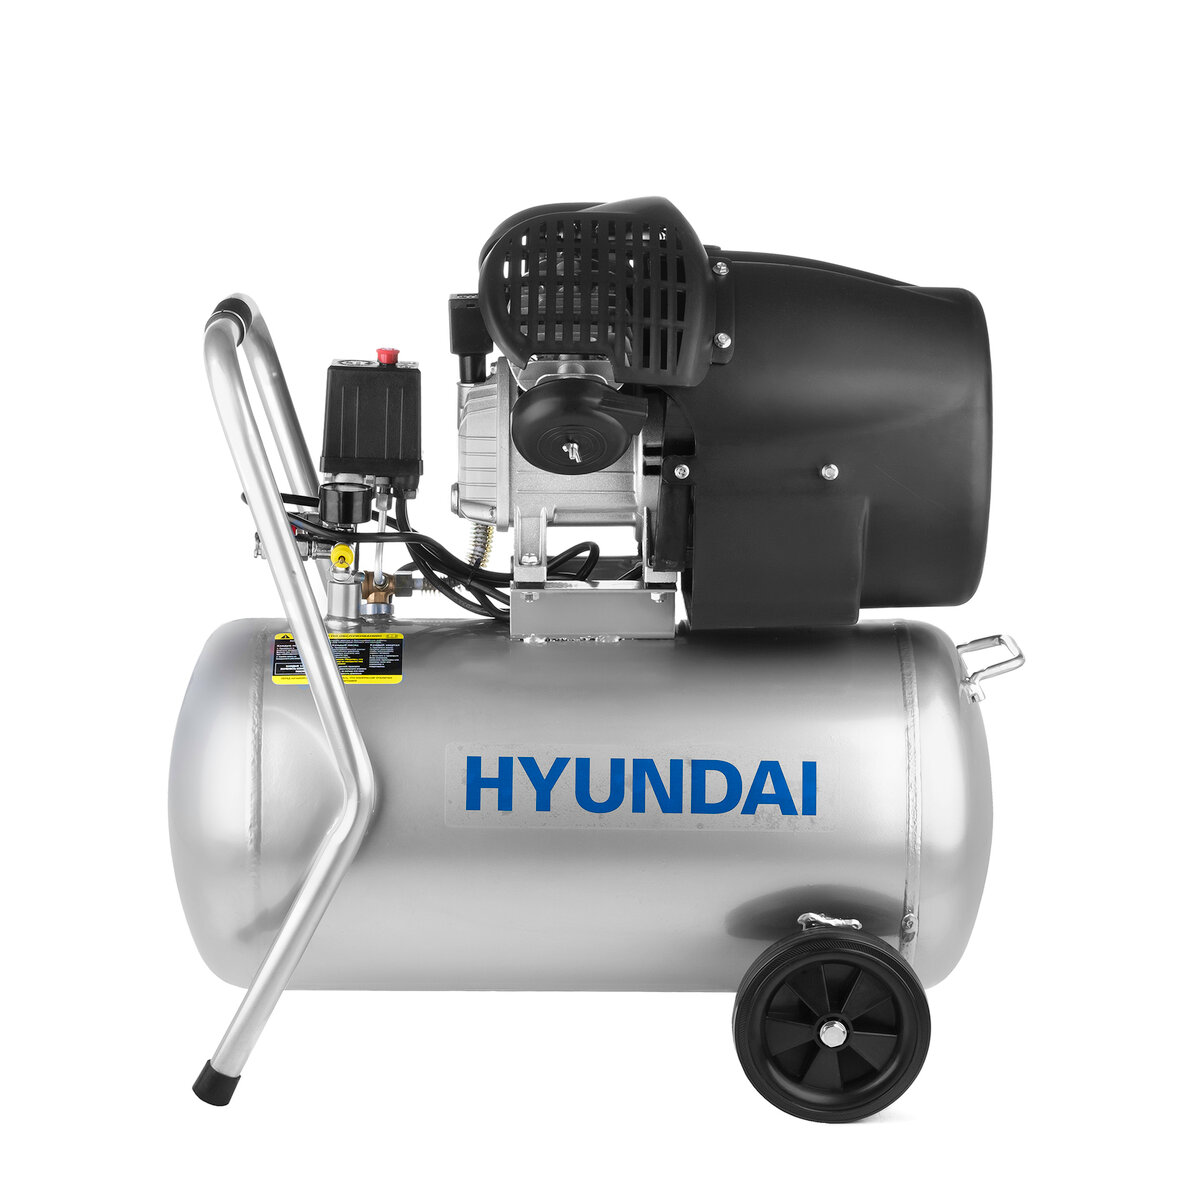 Компрессор поршневой Hyundai НYC 40250LMS, 50 л, 400 л/мин.